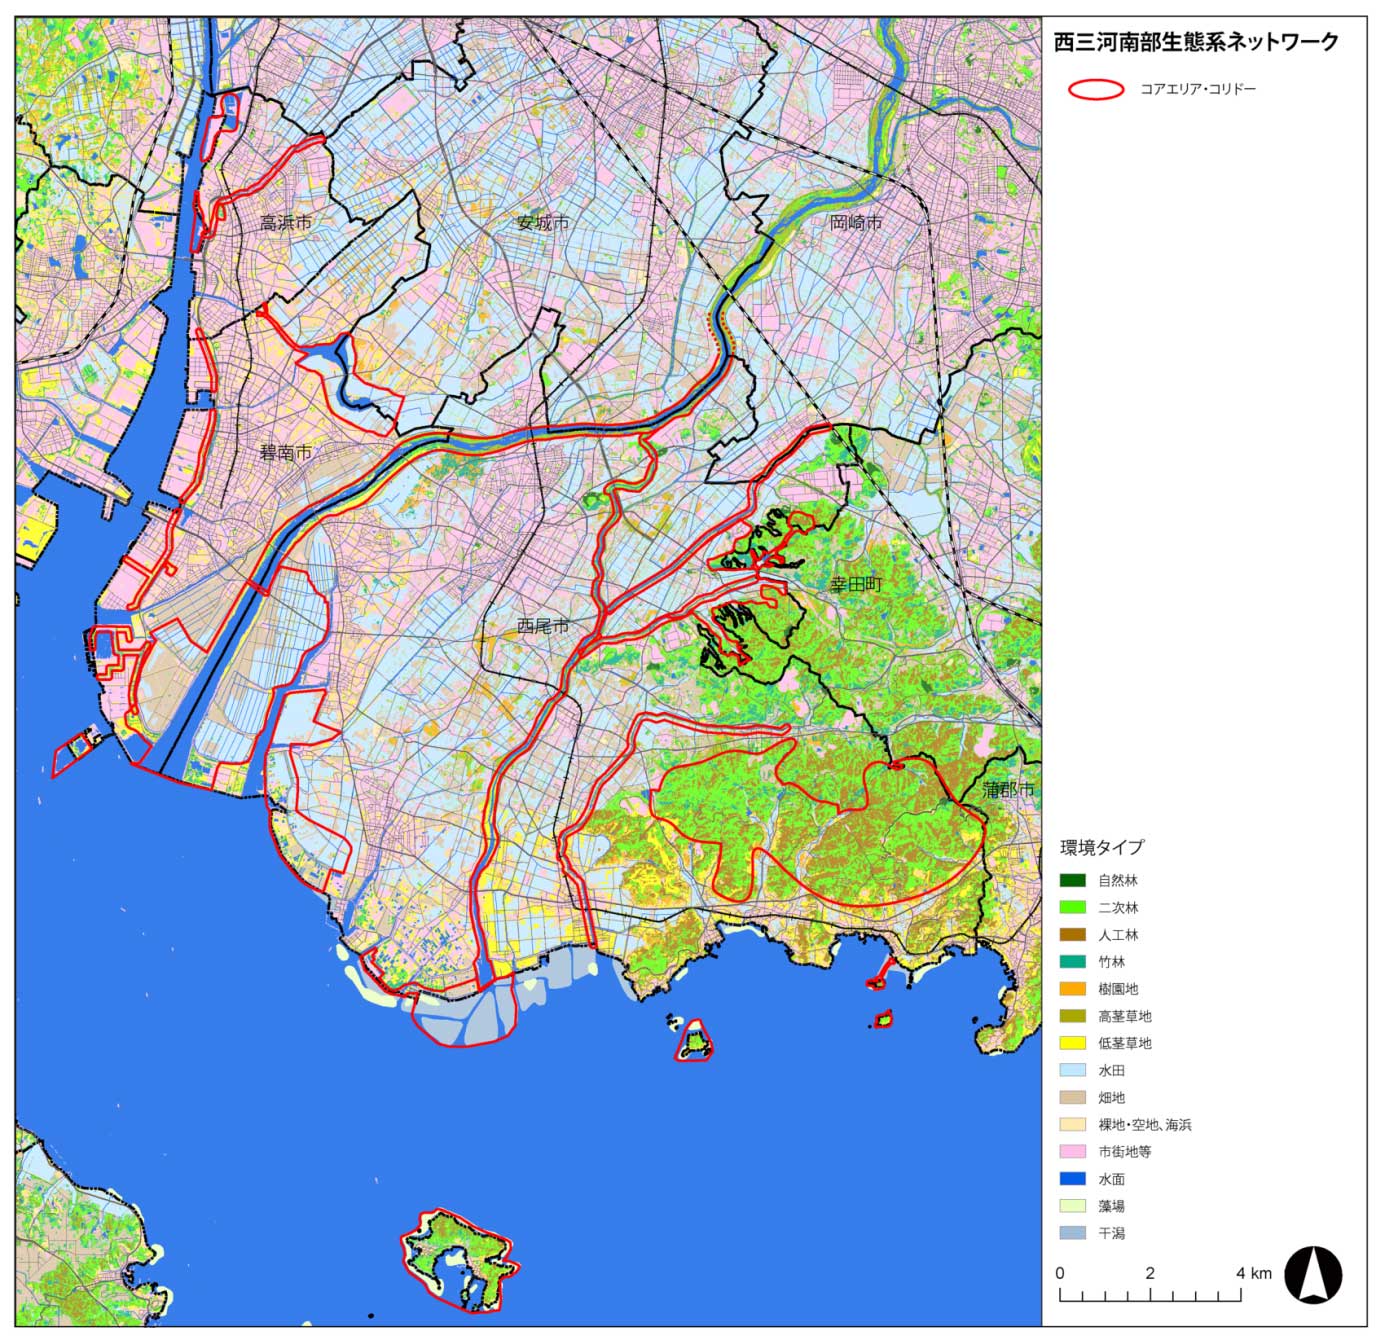 西三河南部生態系ネットワークロードマップ